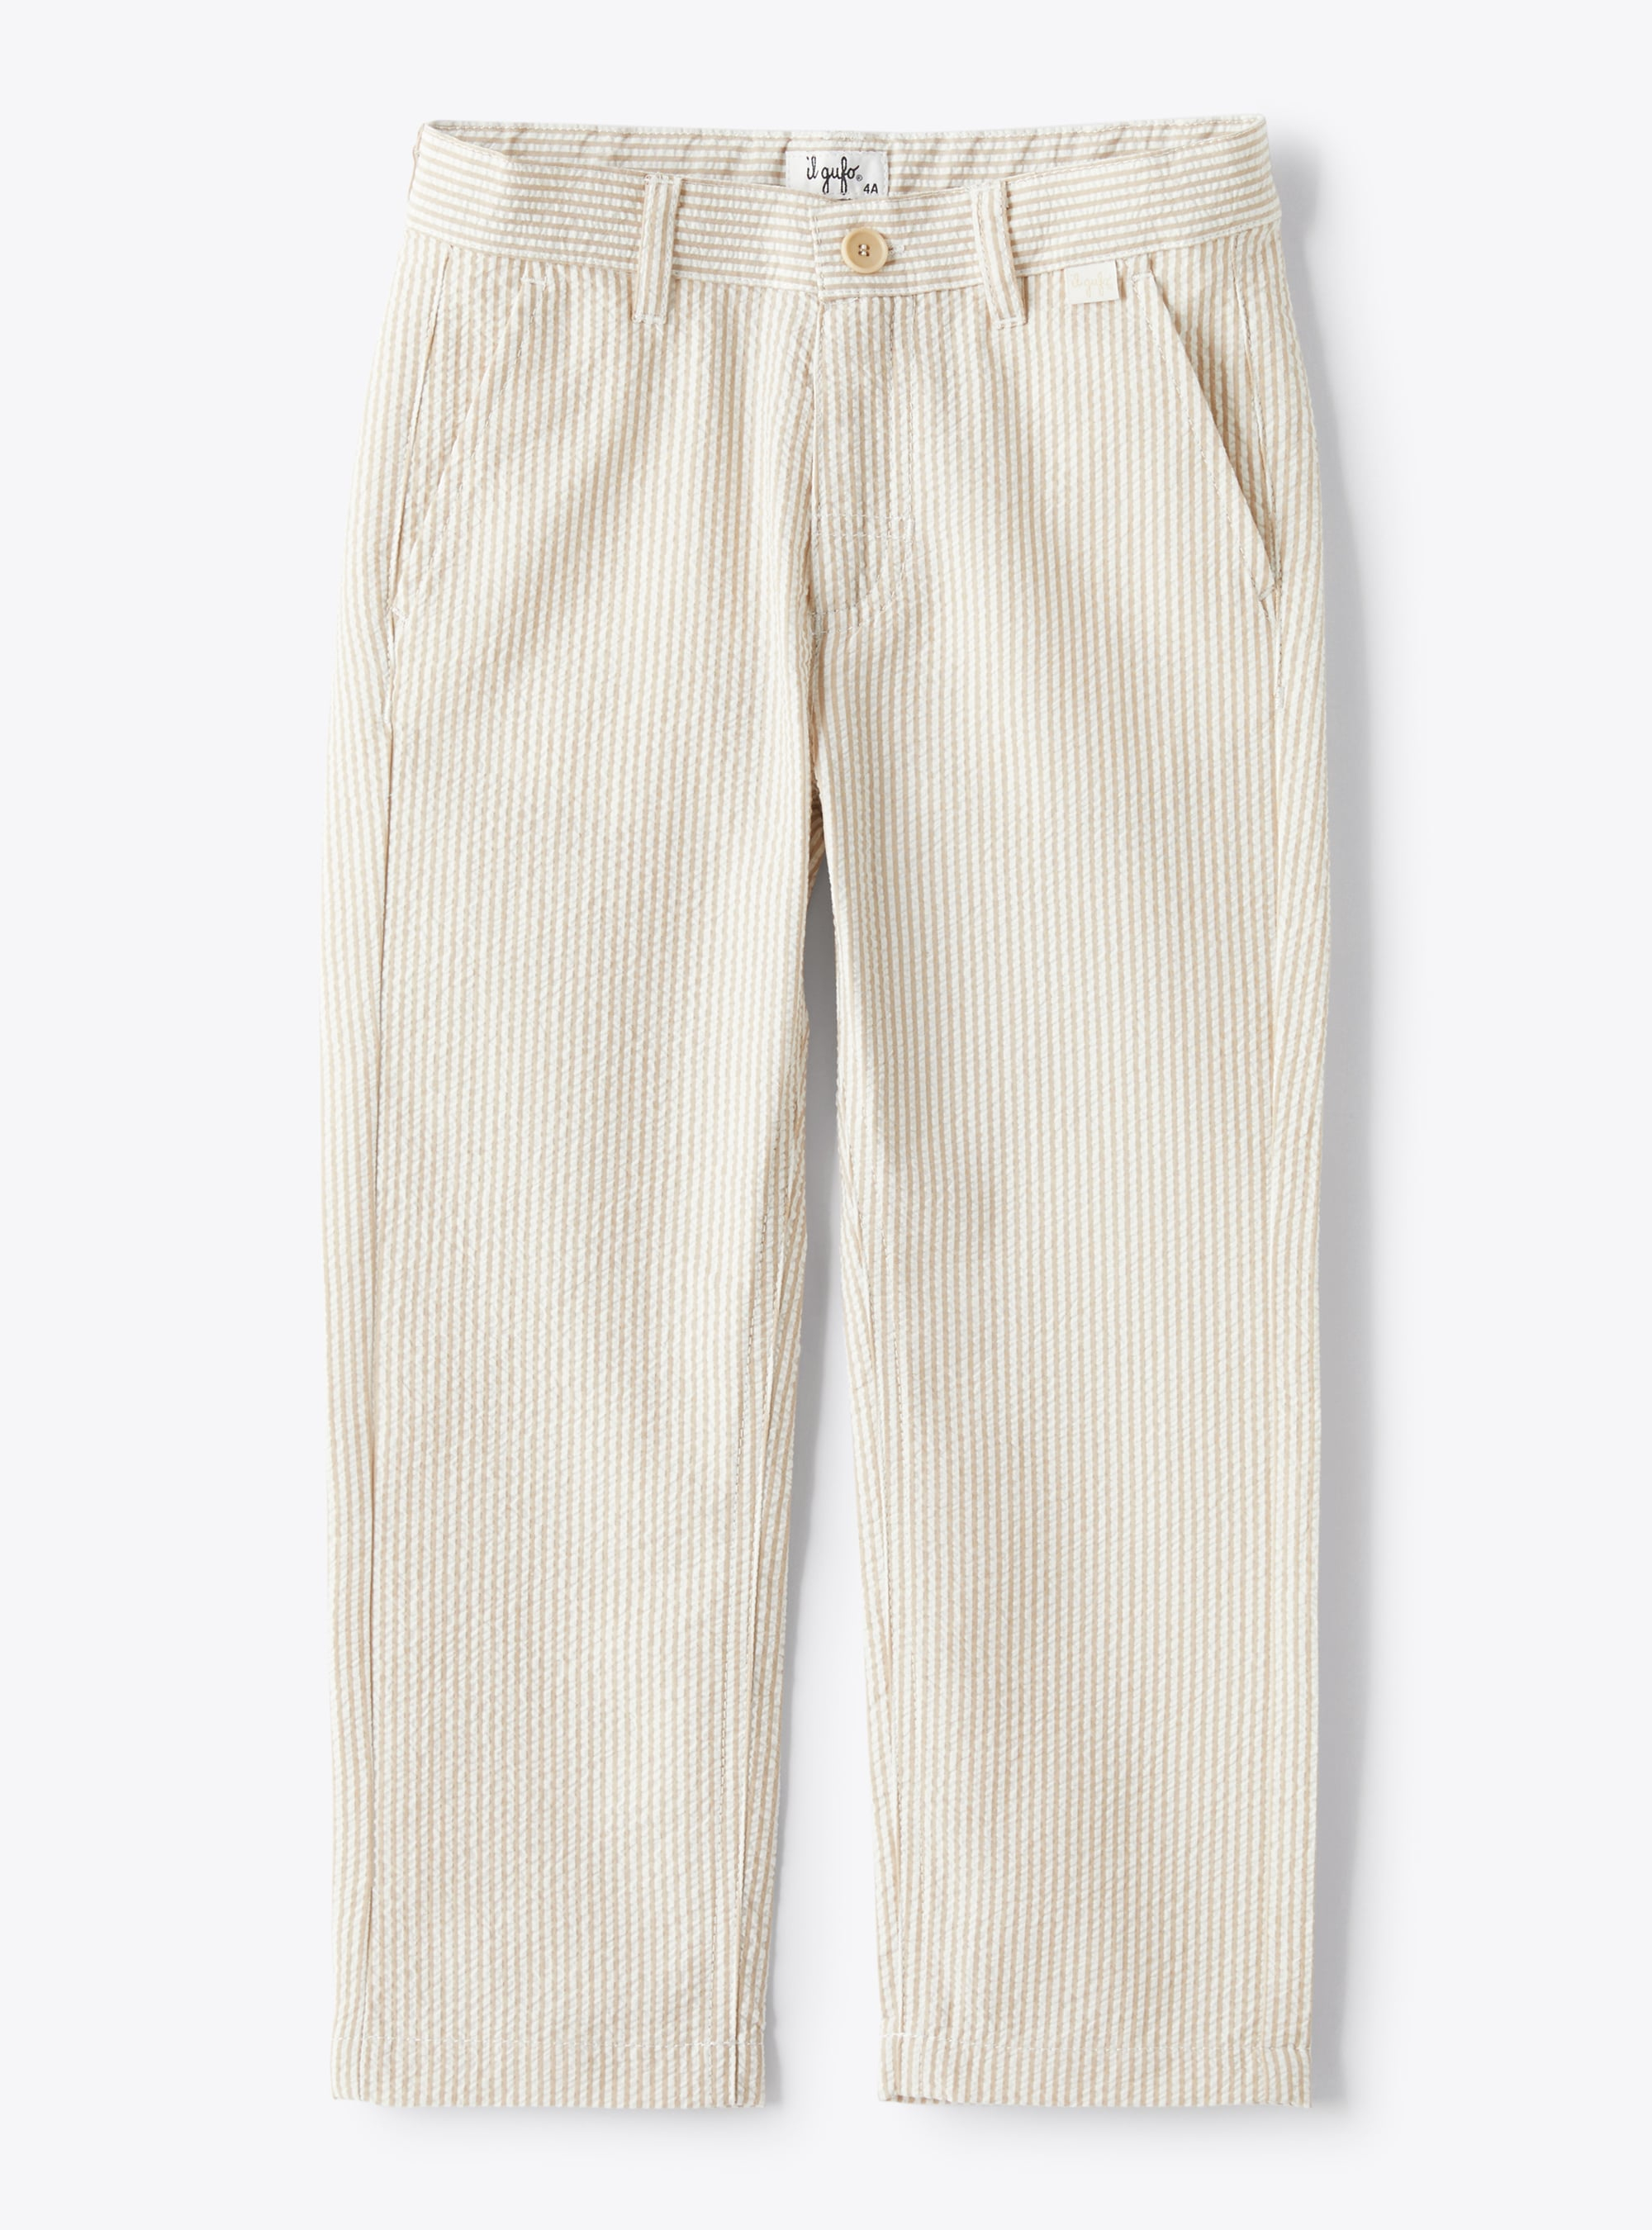 Pantalone lungo in seersucker a righe beige e bianche - Pantaloni - Il Gufo